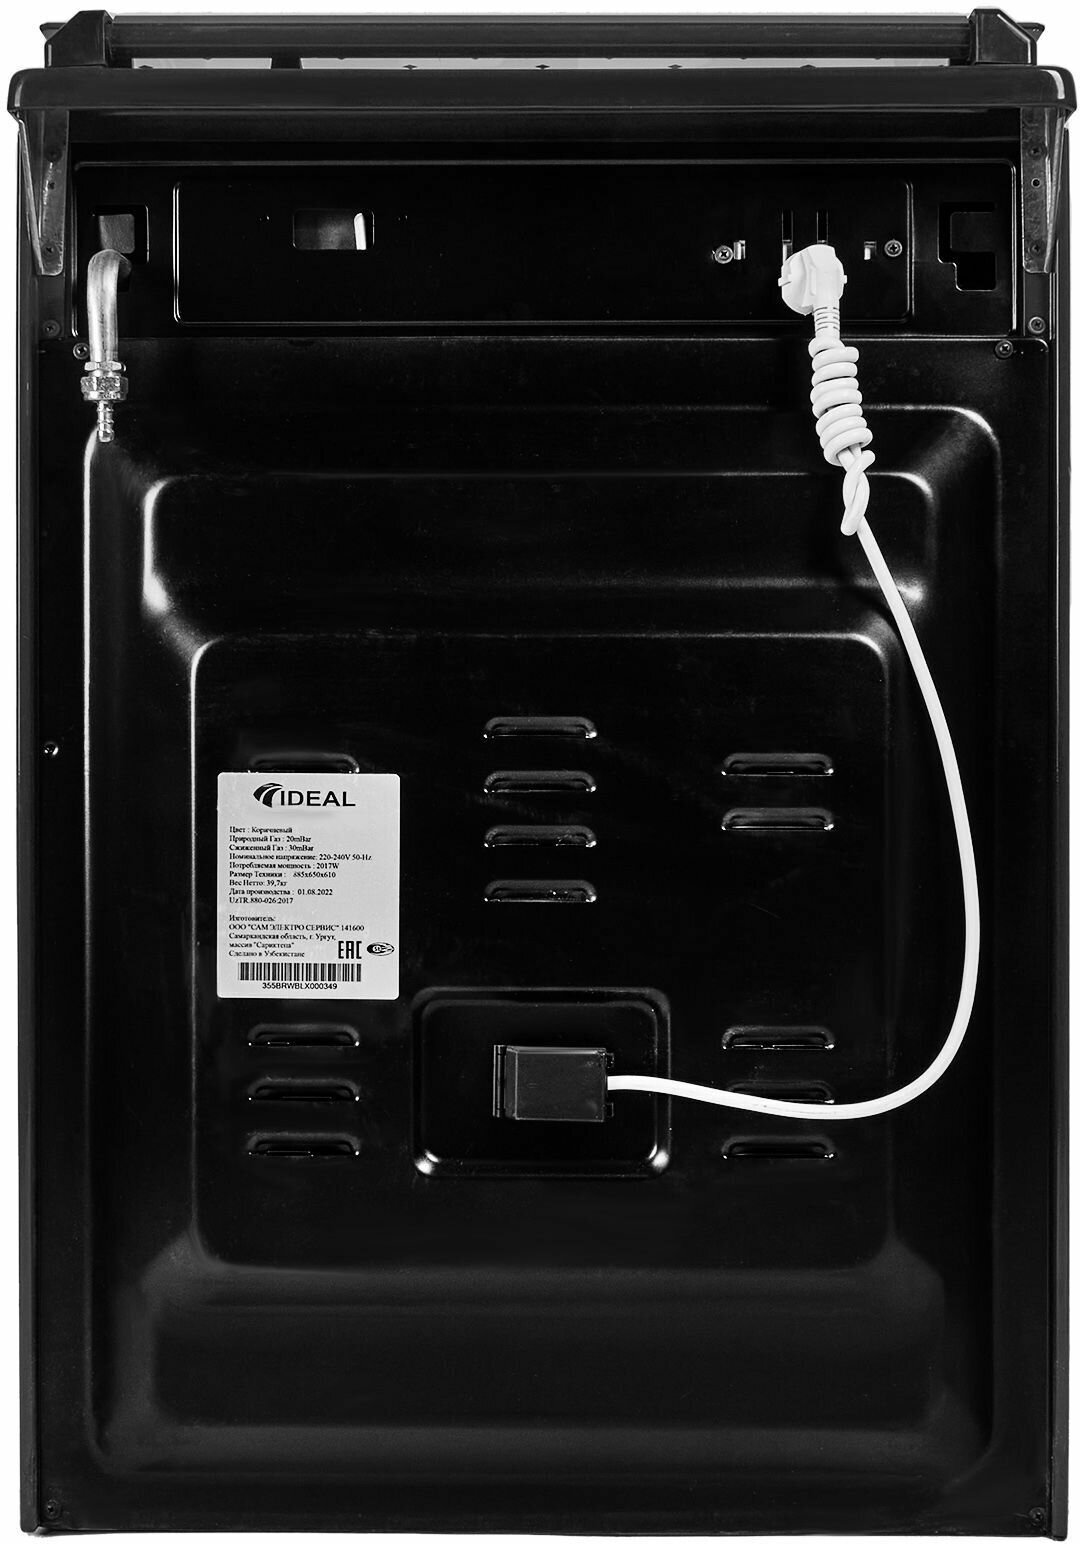 Комбинированная плита IDEAL L 155 ГК черная 60 см, газовые конфорки, электрическая духовка, ГАЗ контроль, чугунные решетки, электроподжиг - фотография № 7